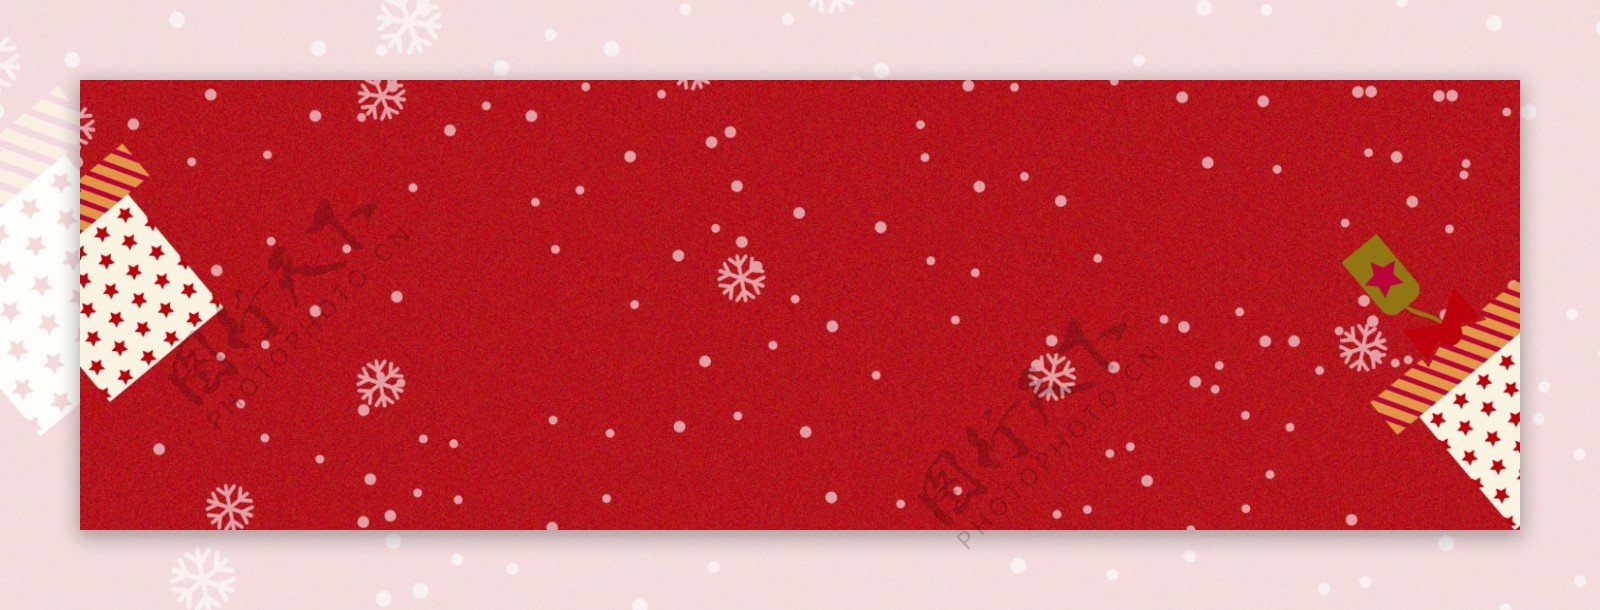 红色雪地冬天色圣诞节banner背景